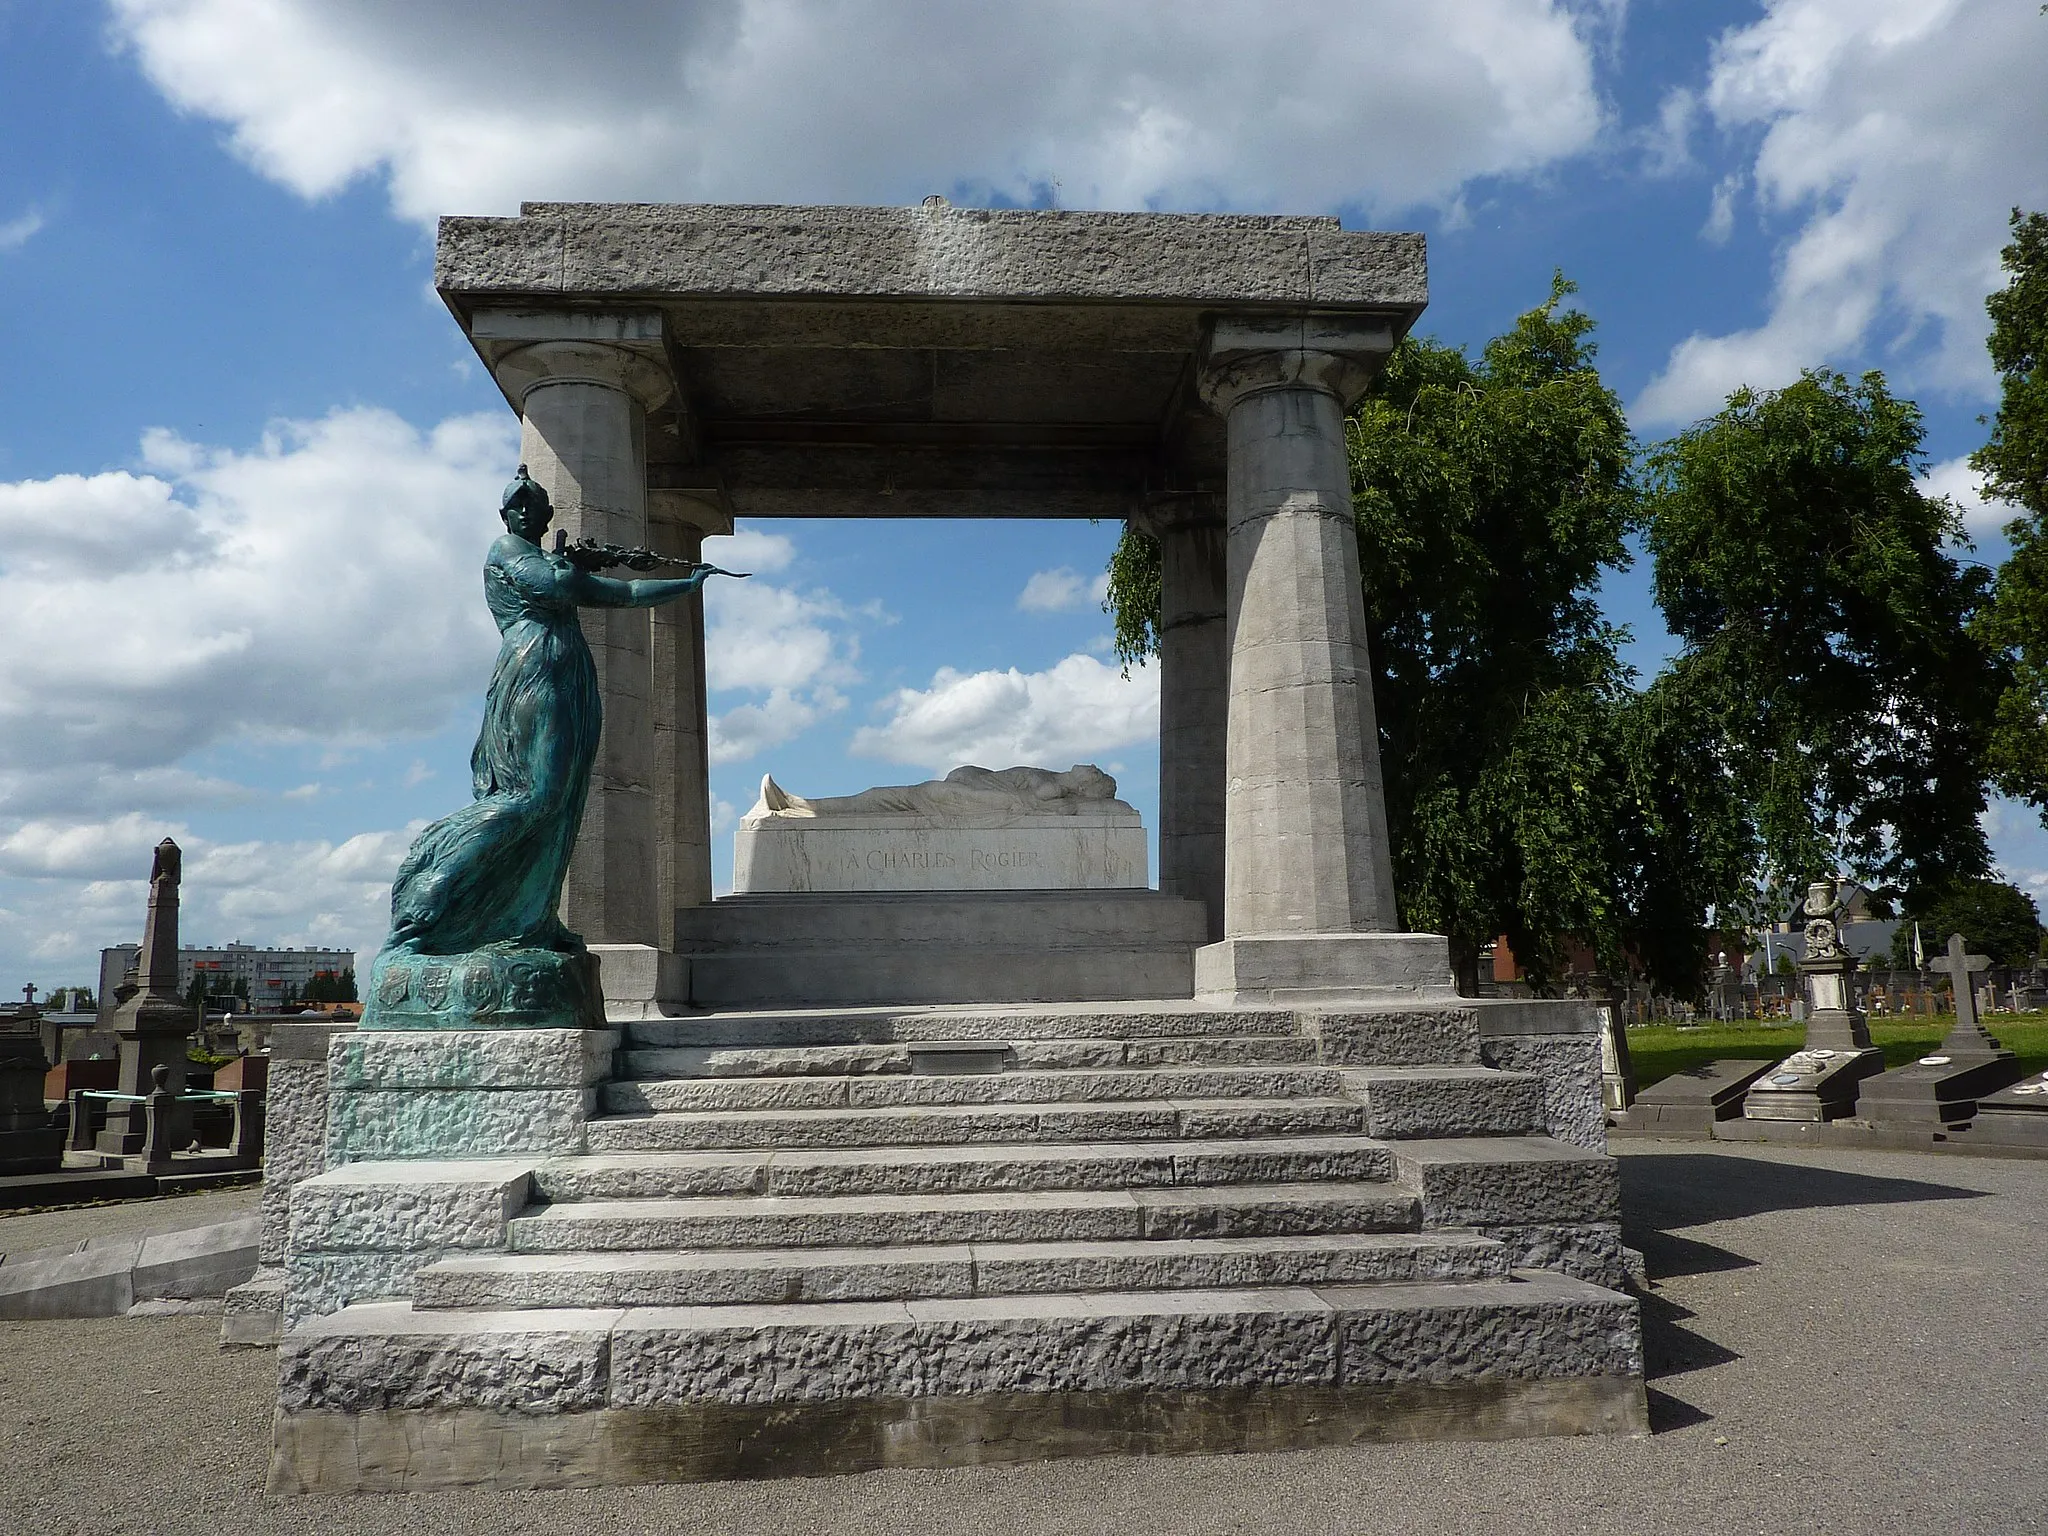 Photo showing: Tombe de Charles Rogier au cimetière de Saint-Josse-ten-Noode à Schaerbeek, Bruxelles, Belgique. Monument funéraire de Paul Hankar et sculpteur Isidore De Rudder.